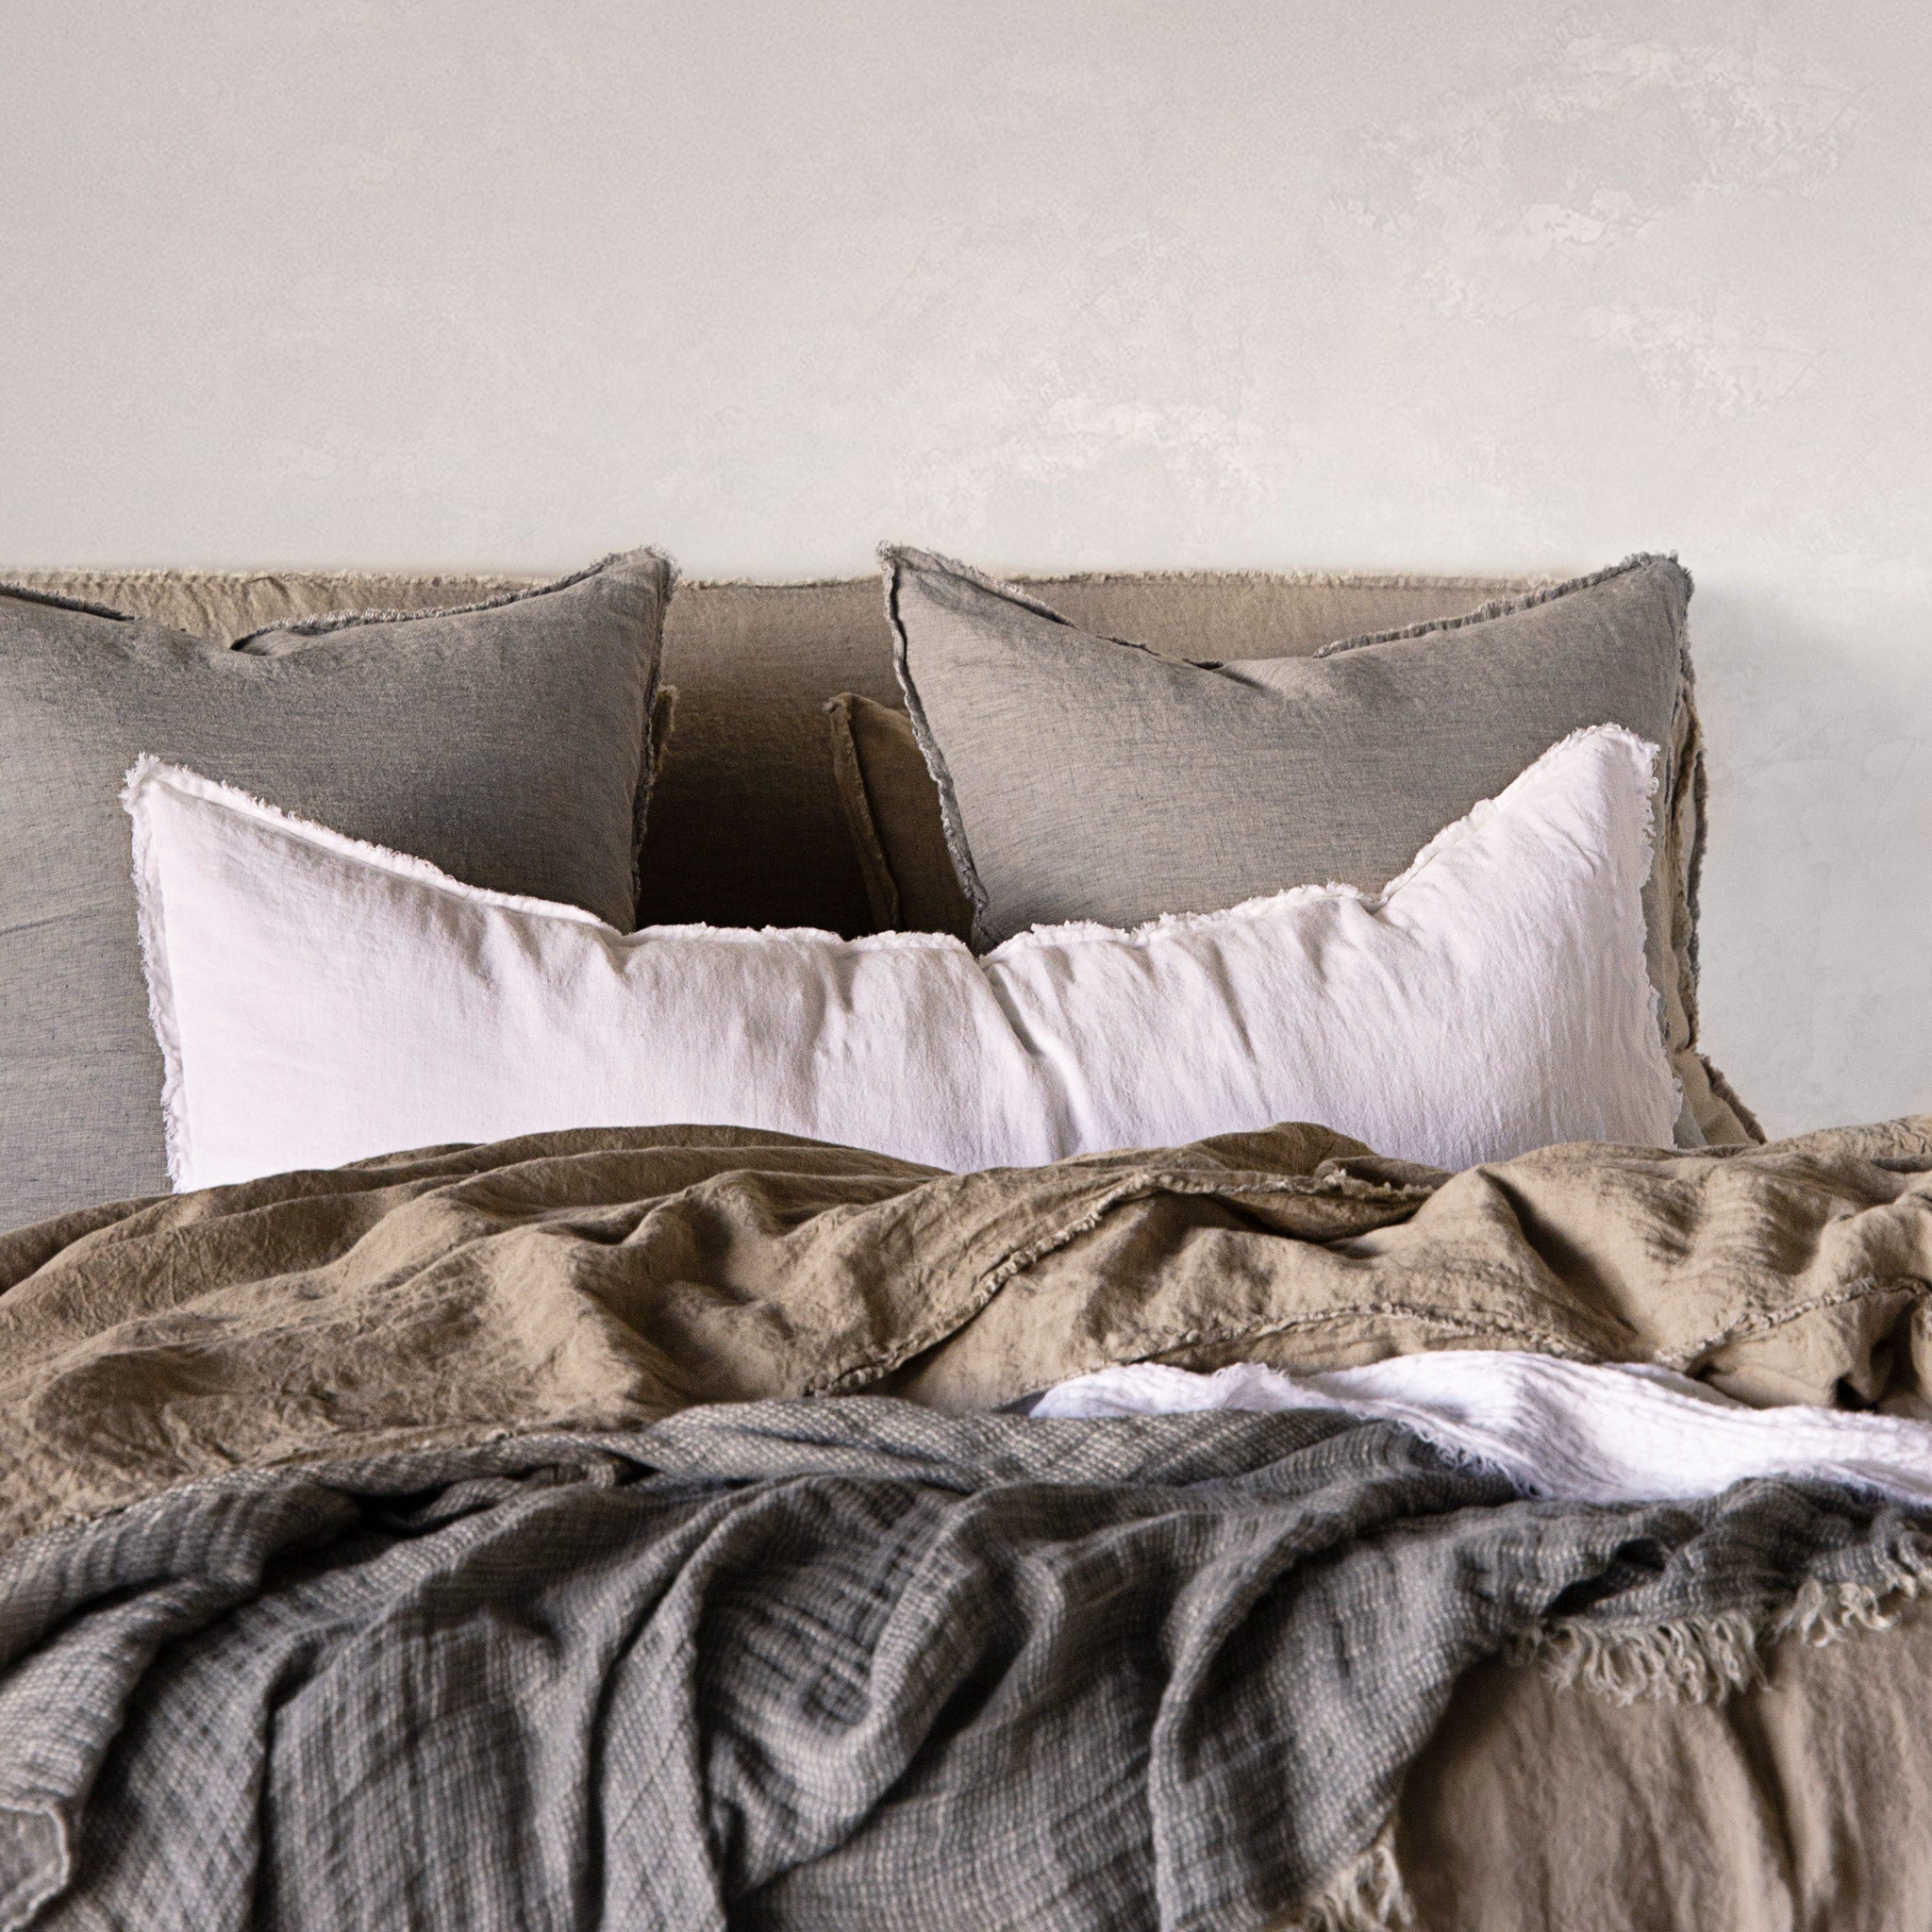 European Linen Pillowcases | Mid Grey | Hale Mercantile Co.